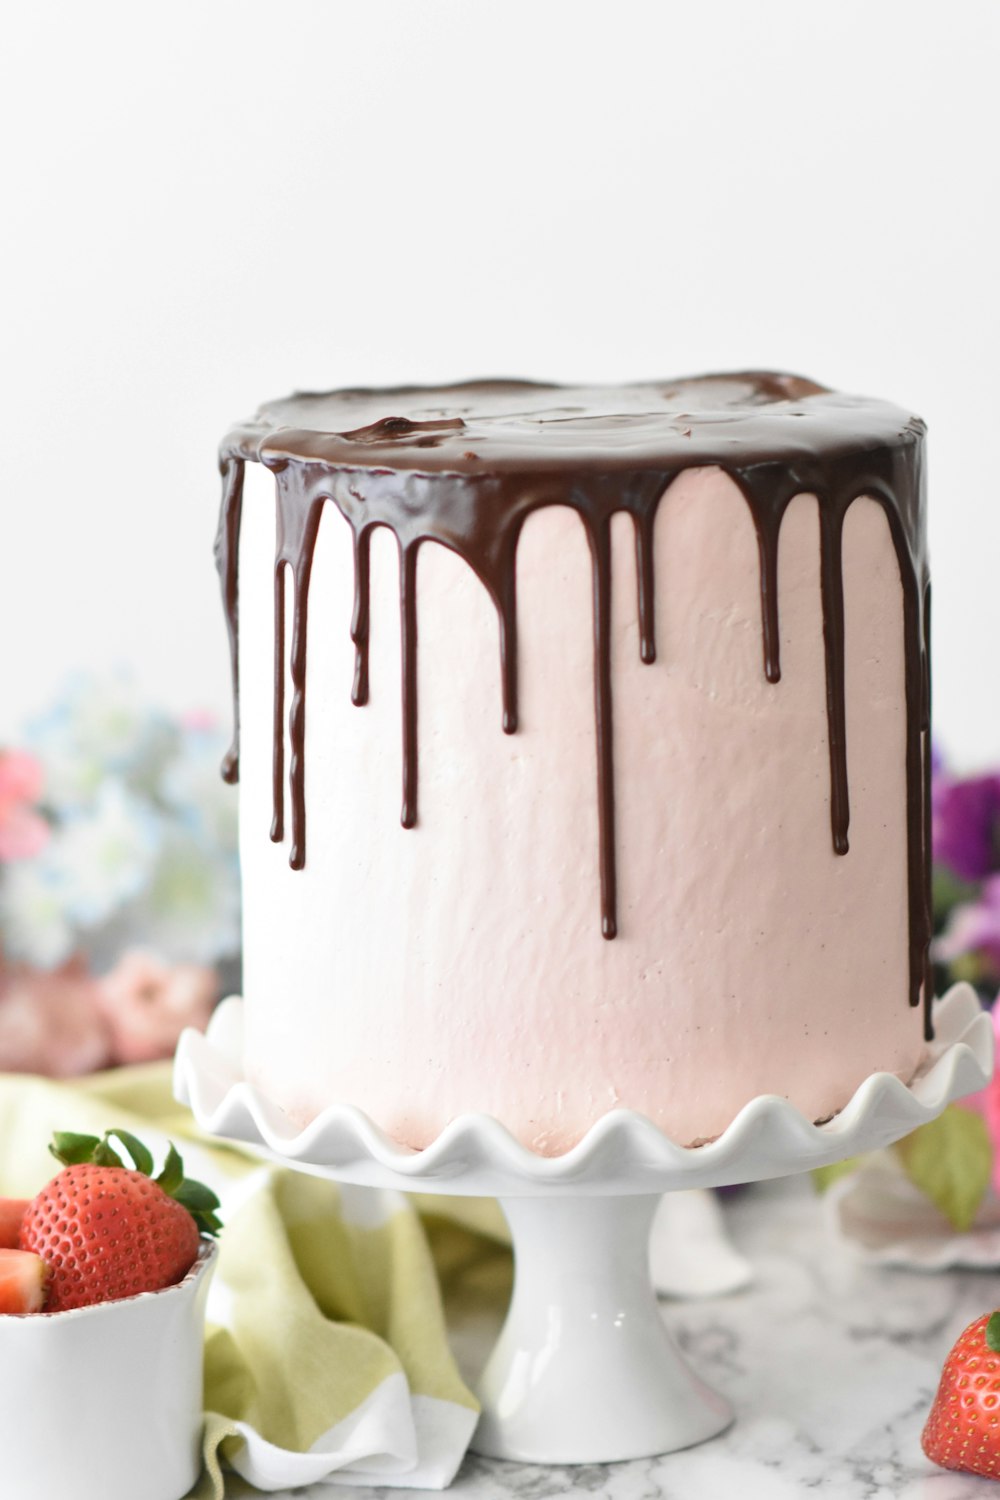 トレイにチョコレートを載せたピンクのケーキ